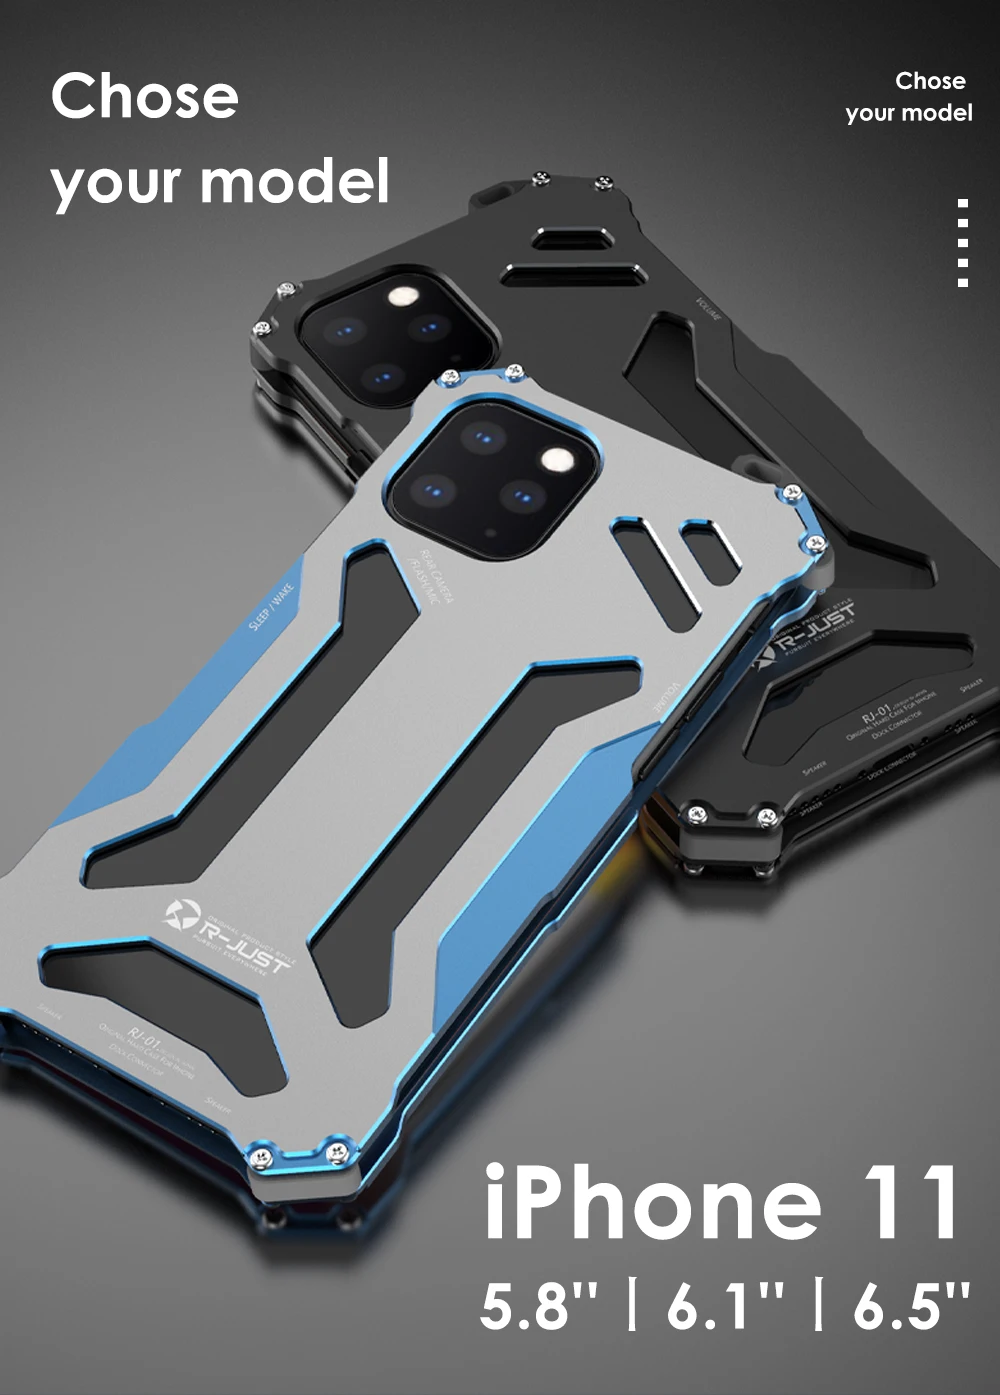 Алюминий воина гундама бронированный чехол "Железный человек" для iPhone 11 Pro Max XS Max XR X/iPhone 8/iPhone 7 Plus чехол для телефона защитный чехол кожаный чехол